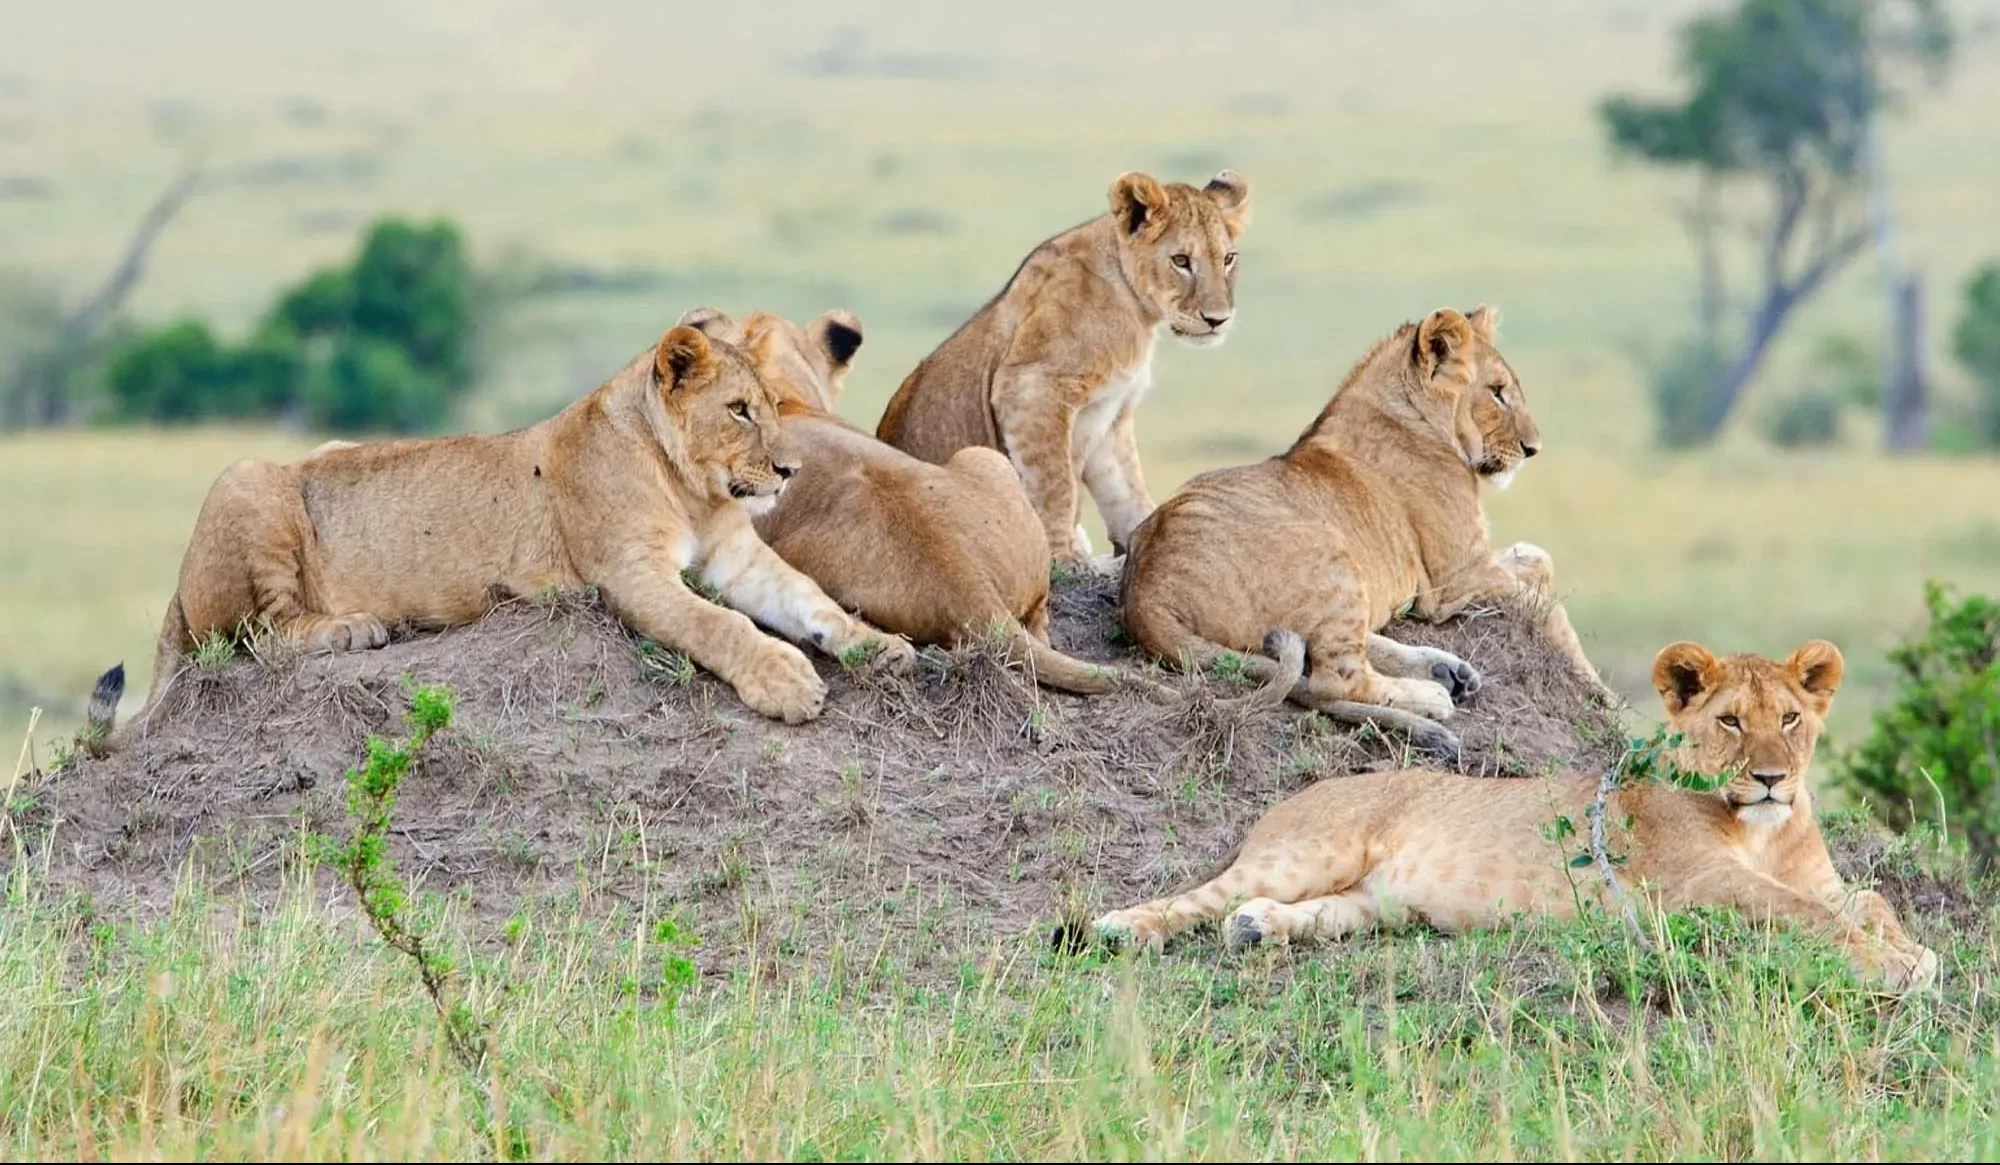 Planning a Memorable Uganda Safari